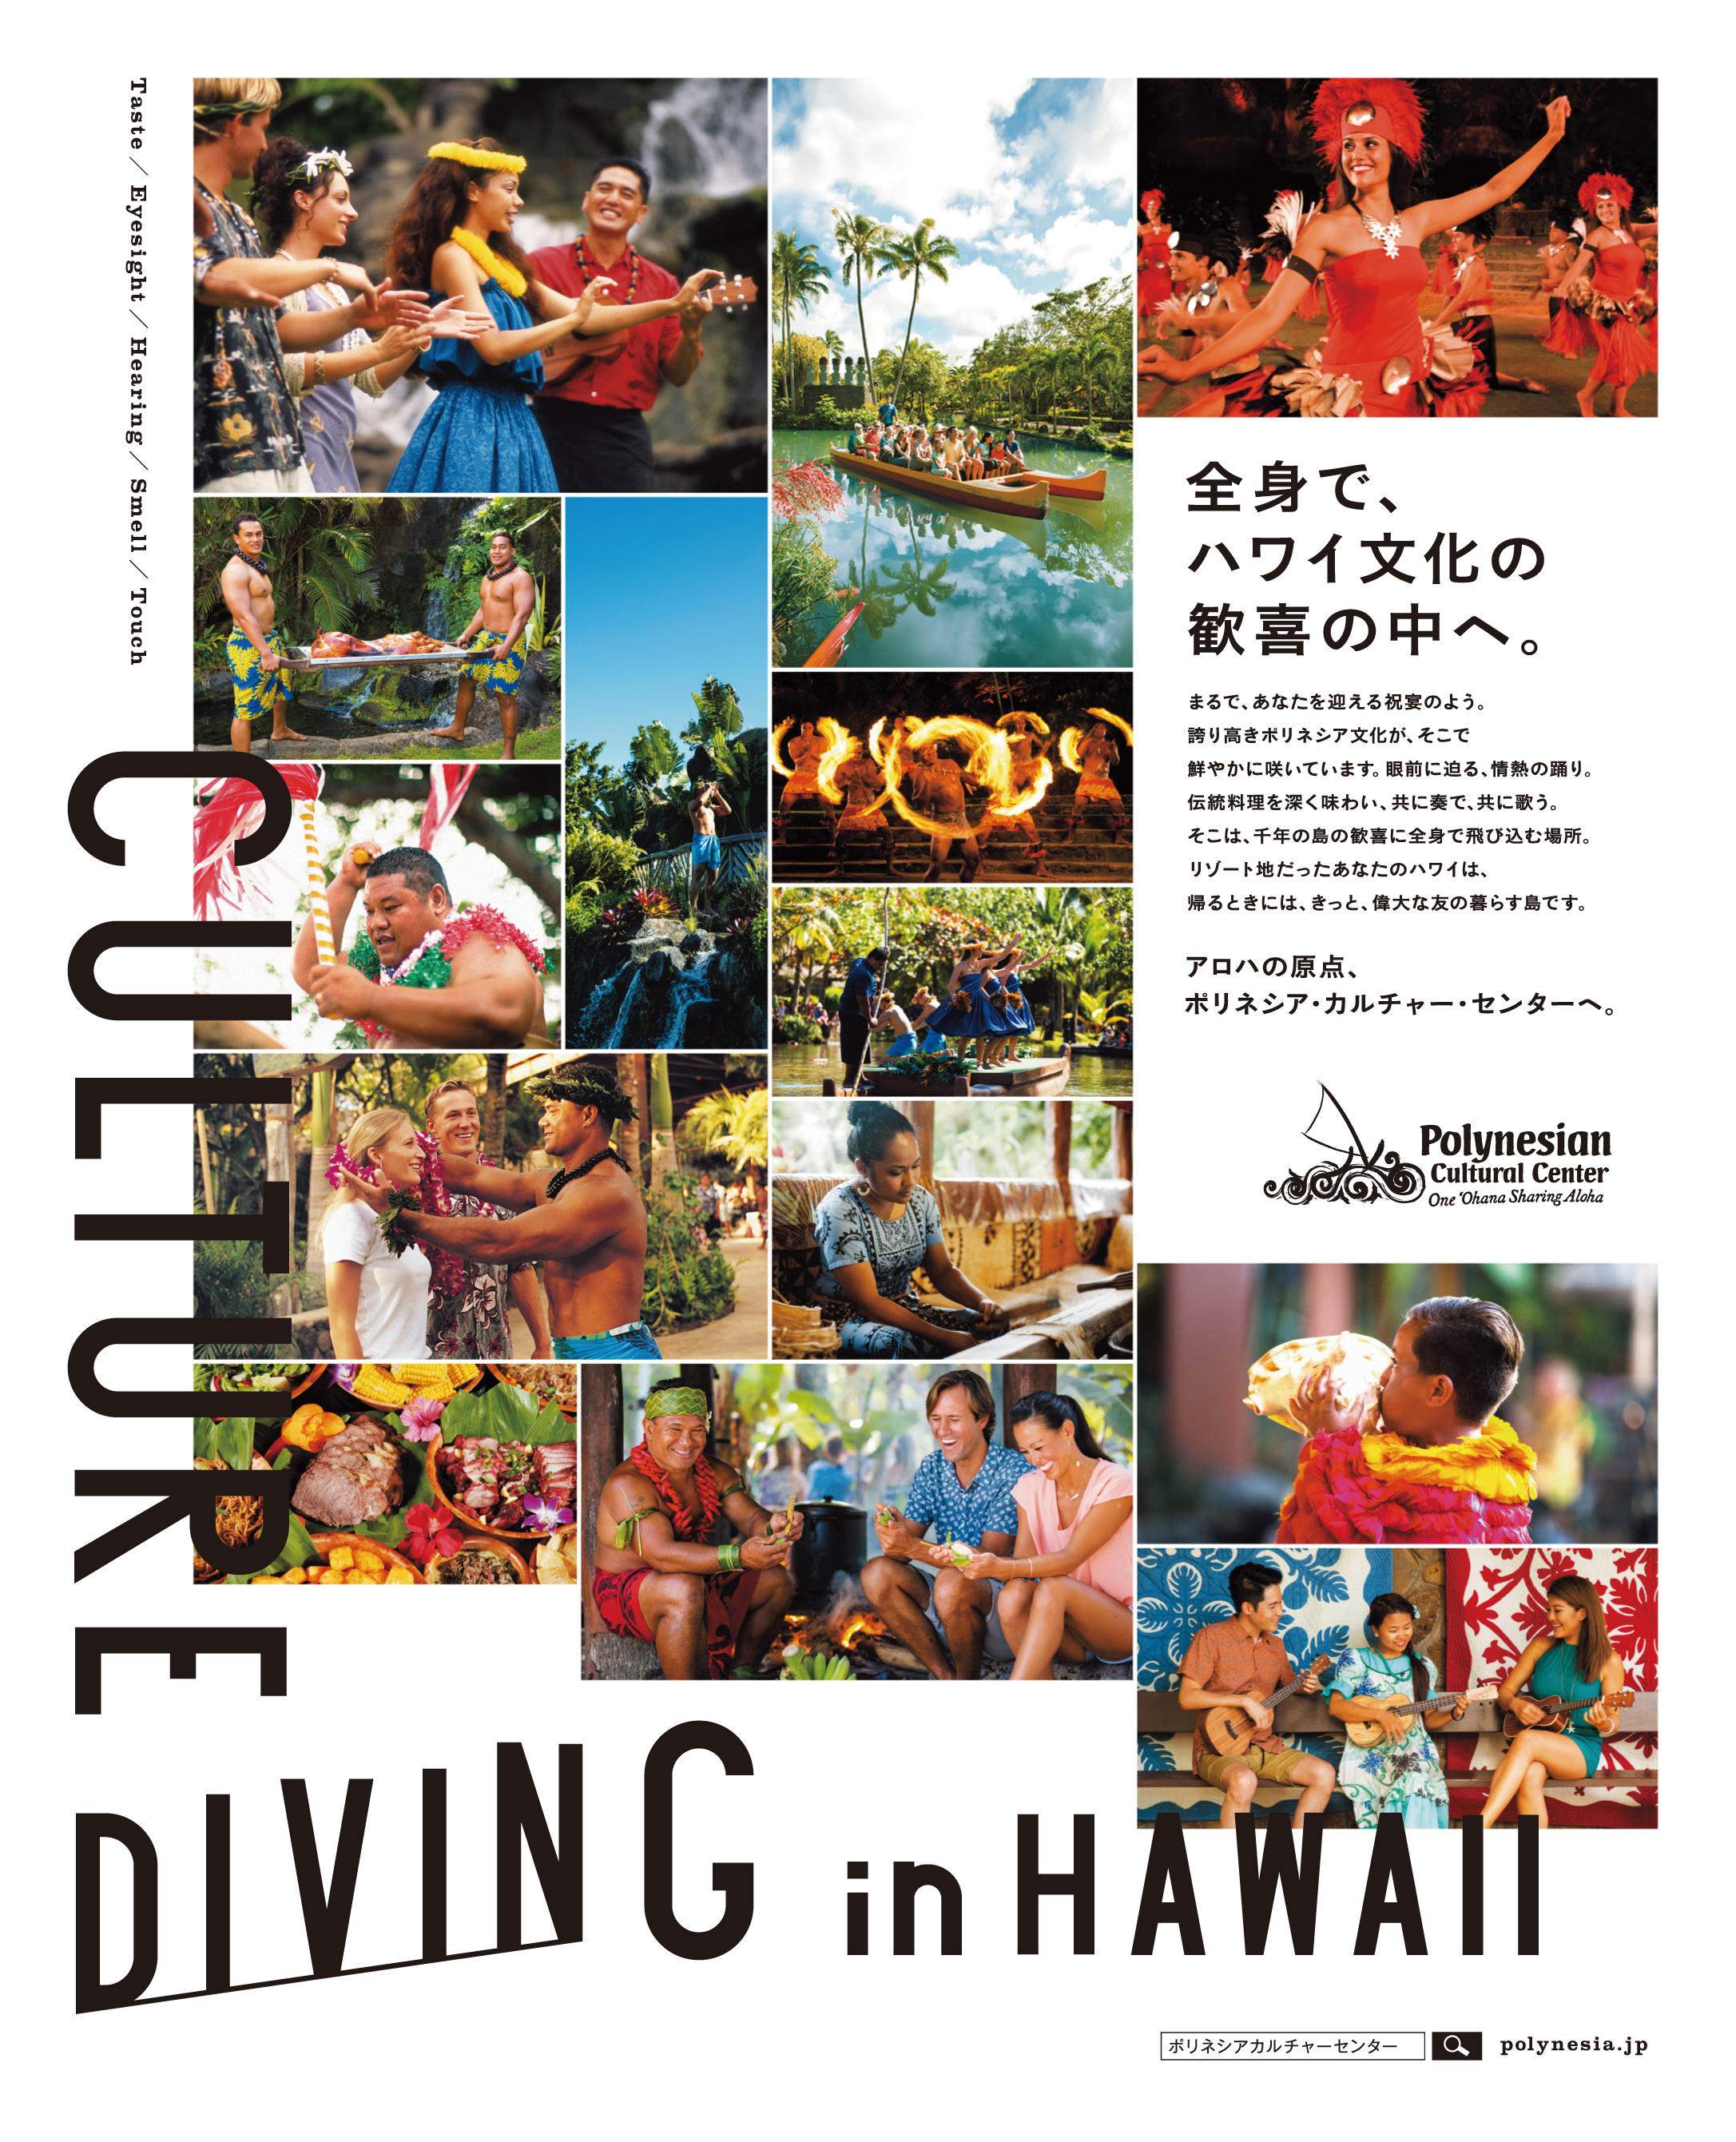 ハワイ唯一の水上ショーがリニューアル ポリネシア文化を体験できるハワイの大型テーマパークで新カヌーショー Huki が8月18日 公開 ポリネシア カルチャー センターのプレスリリース